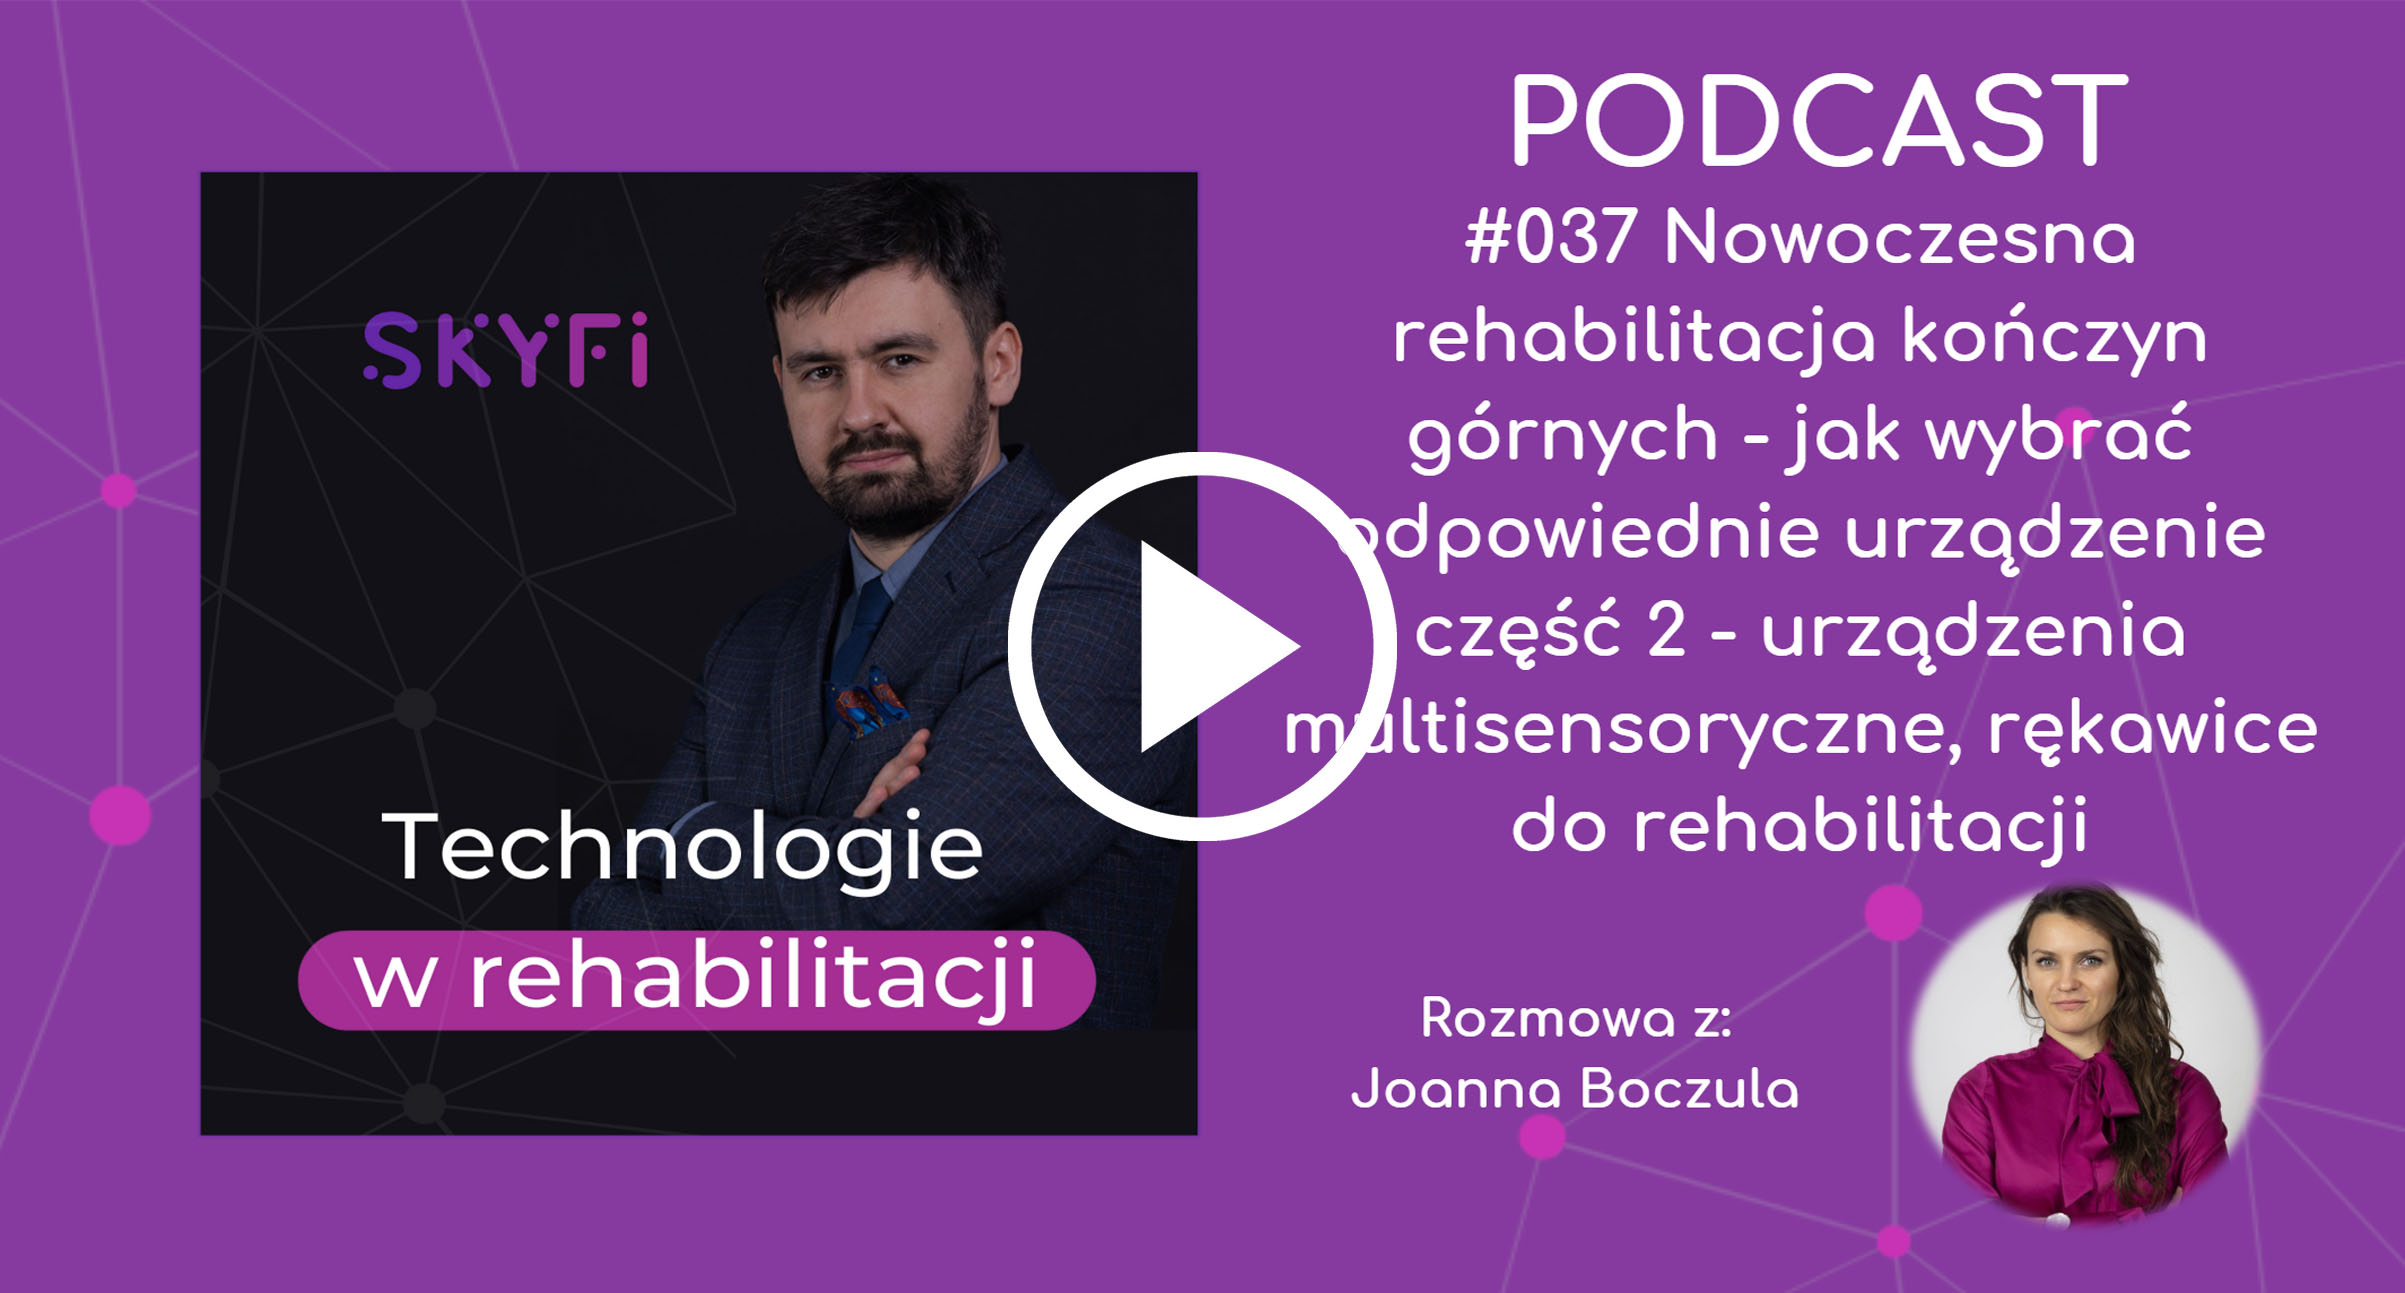 Podcast-nowoczesna-rehabilitacja-kończyn-górnych-urządzenia-multisensoryczne-Skyfi